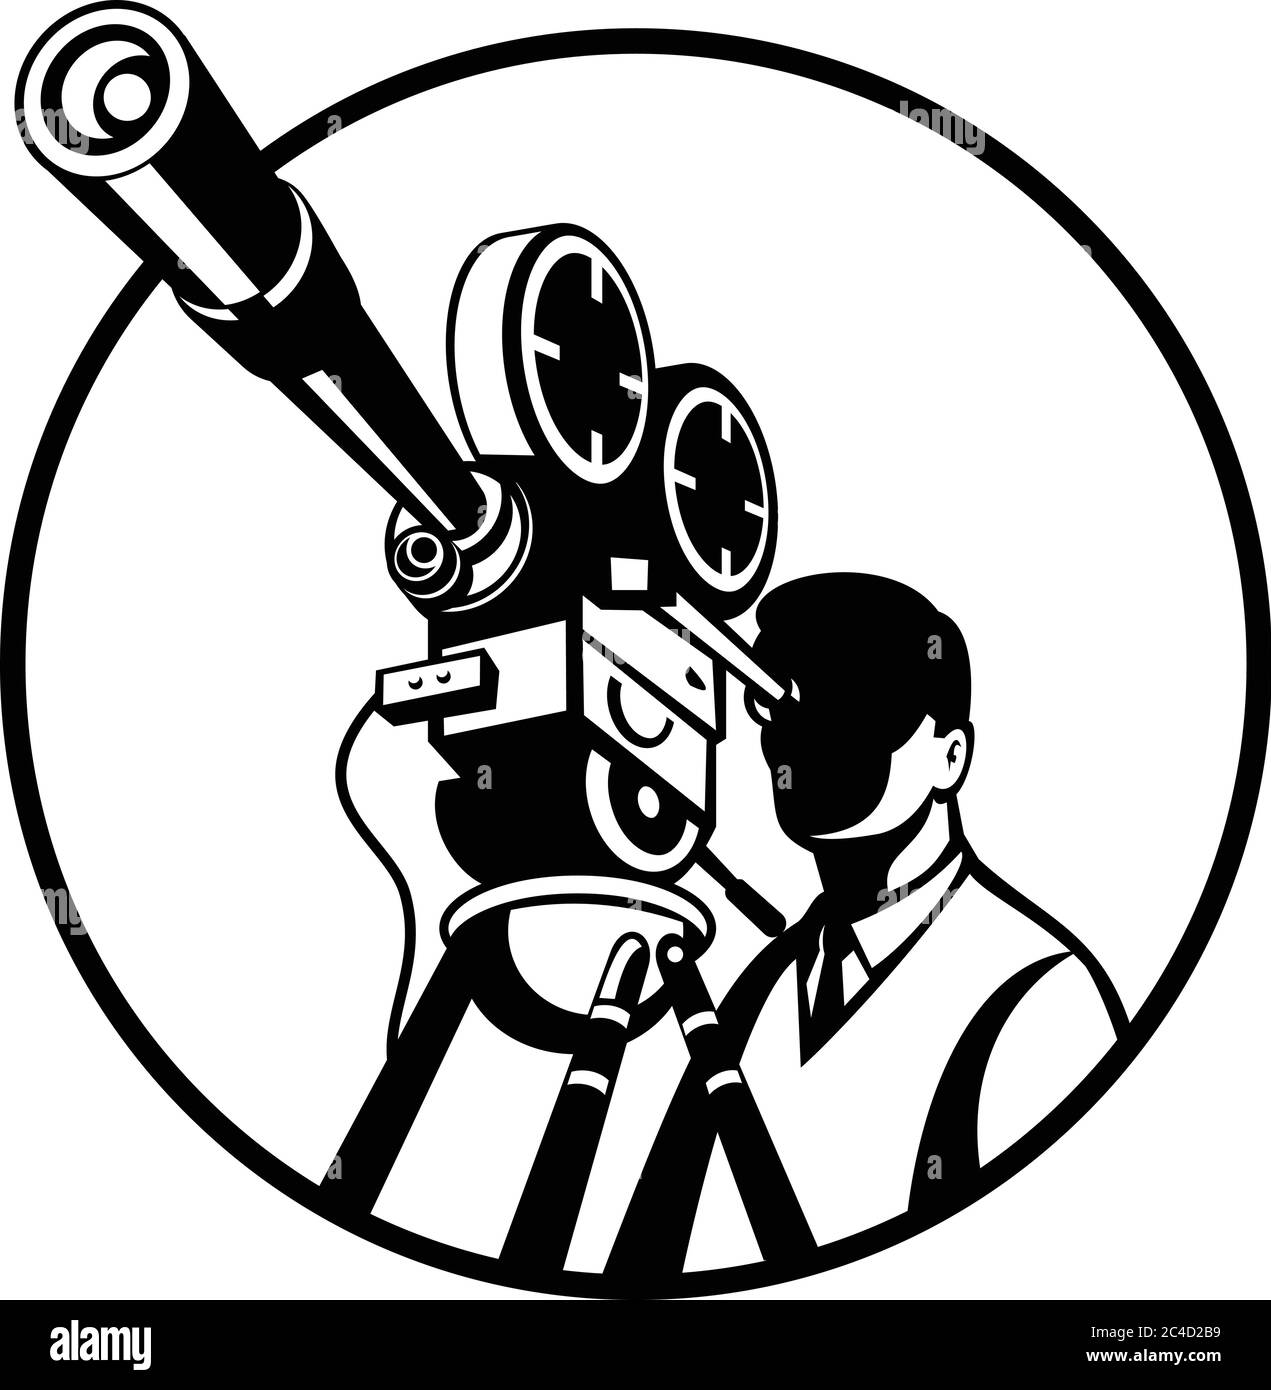 Schwarz-Weiß-Retro-Stil Illustration eines Filmregisseurs Blick durch eine vintage Film Reel Kamera von vorne gesehen gesetzt im Kreis auf isoliert w Stock Vektor